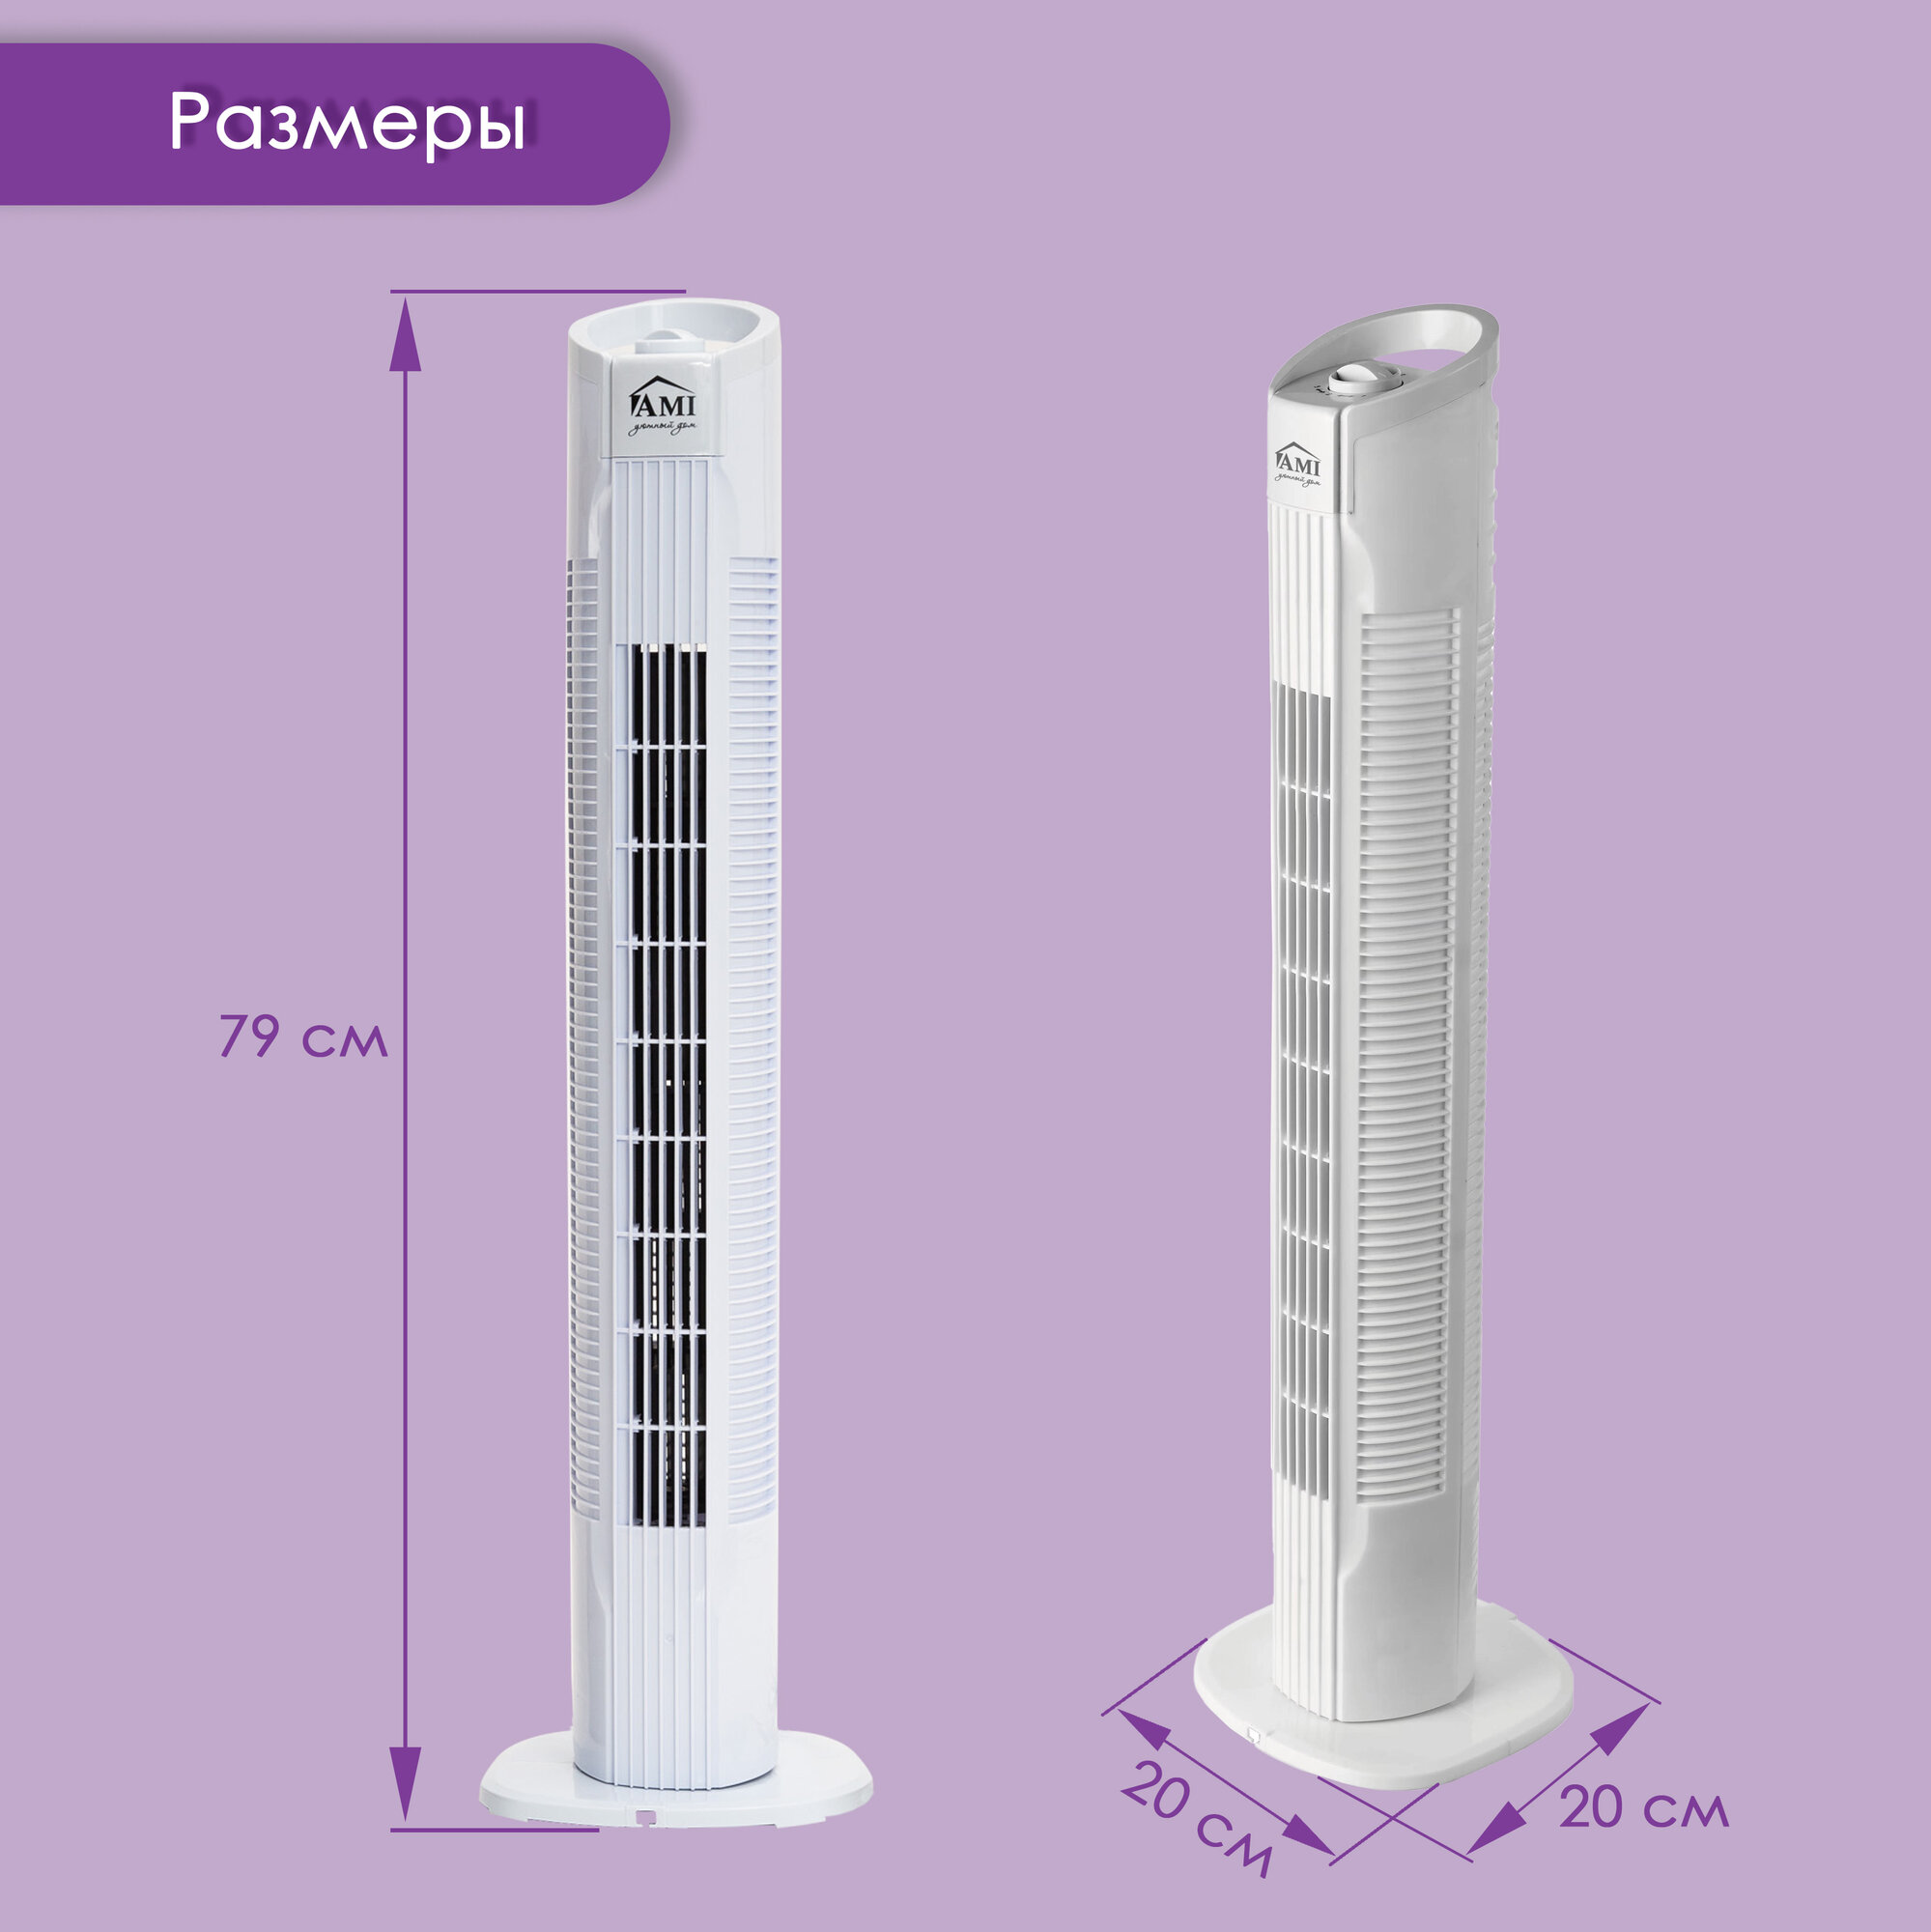 Вентилятор напольный колонный, поворотный вентилятор настольный, белый, мощность 50 W, 3 скорости, 79 см высота, Ами Мебель - фотография № 3